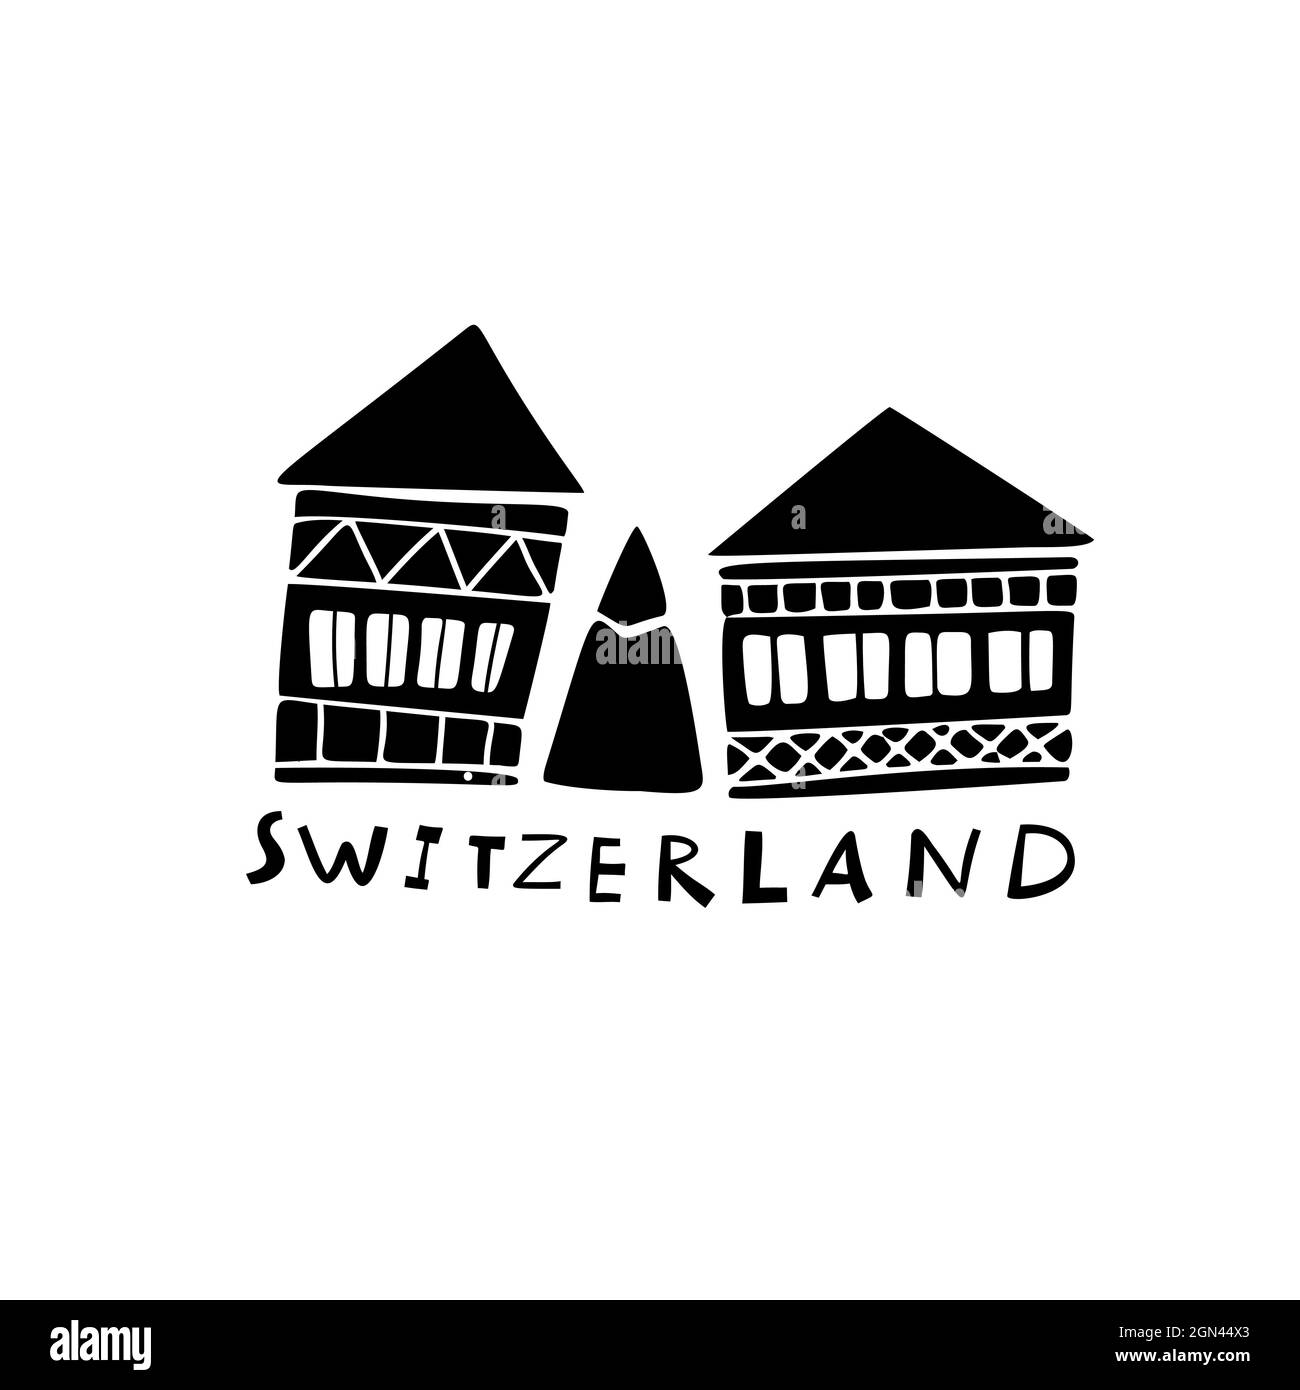 Swiss Chalet Switzerland Stock-Vektorgrafiken kaufen - Alamy